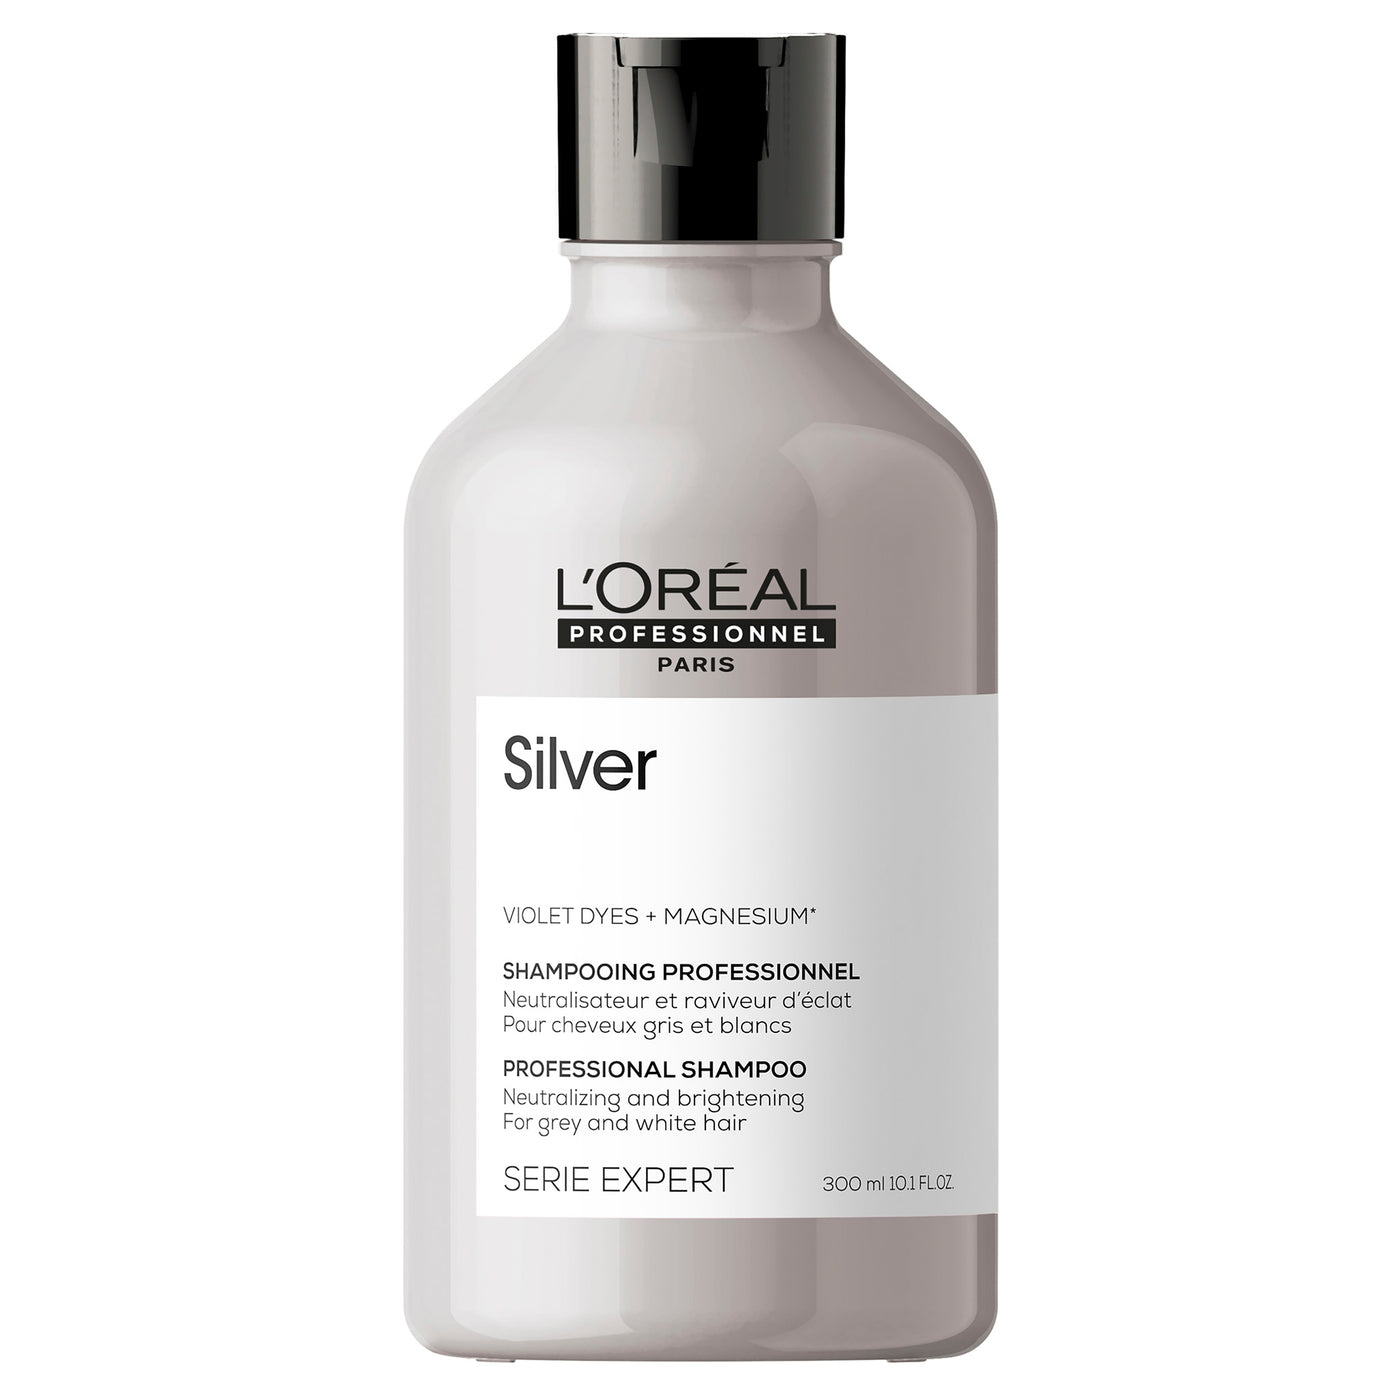 L'Oreal Professionnel Silver Shampoo 300ml